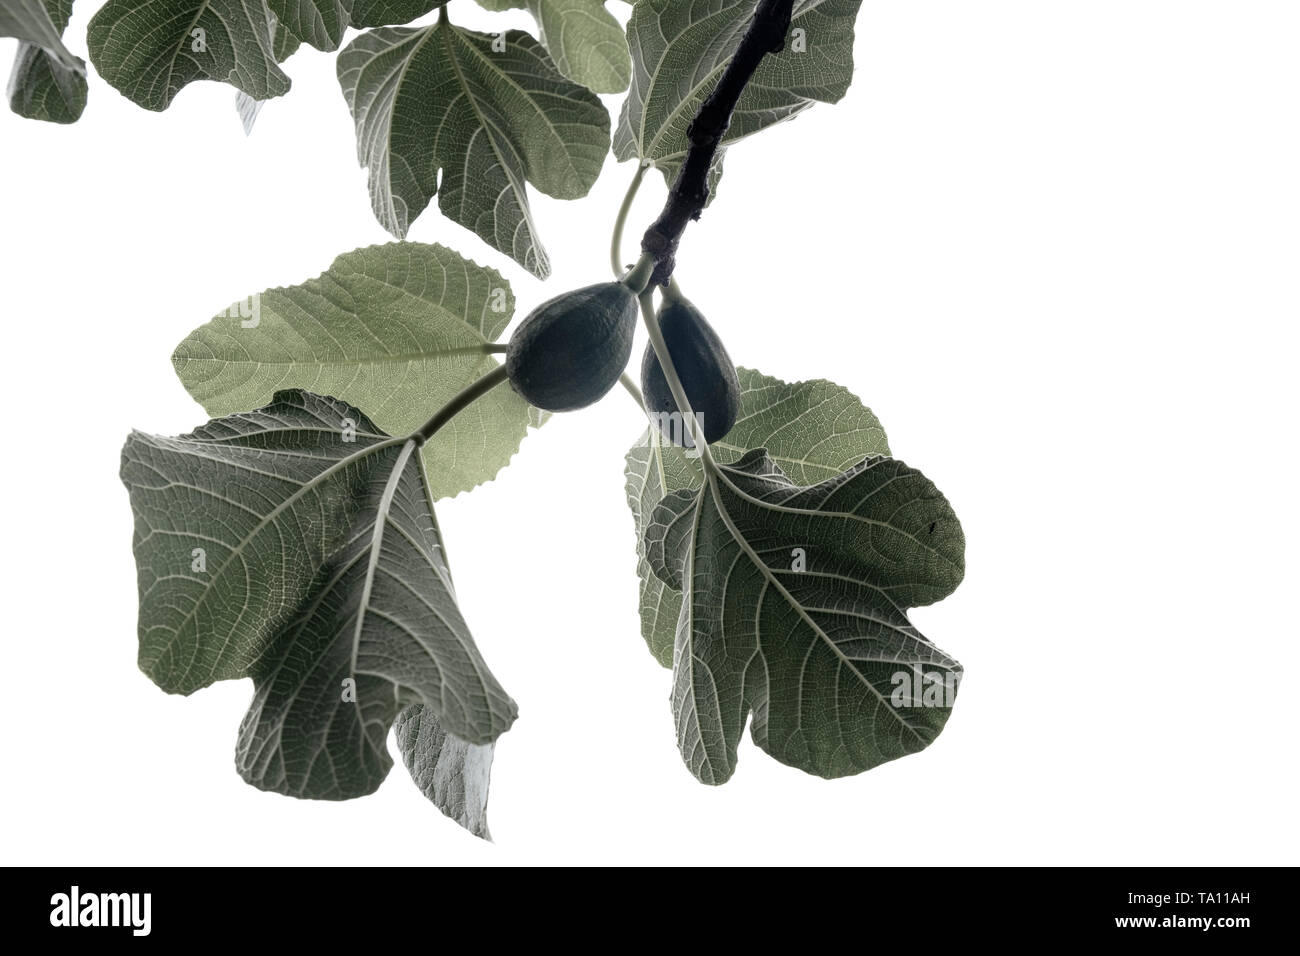 Des feuilles de vigne et des figues sur un figuier Ficus carica contre un fond blanc Banque D'Images